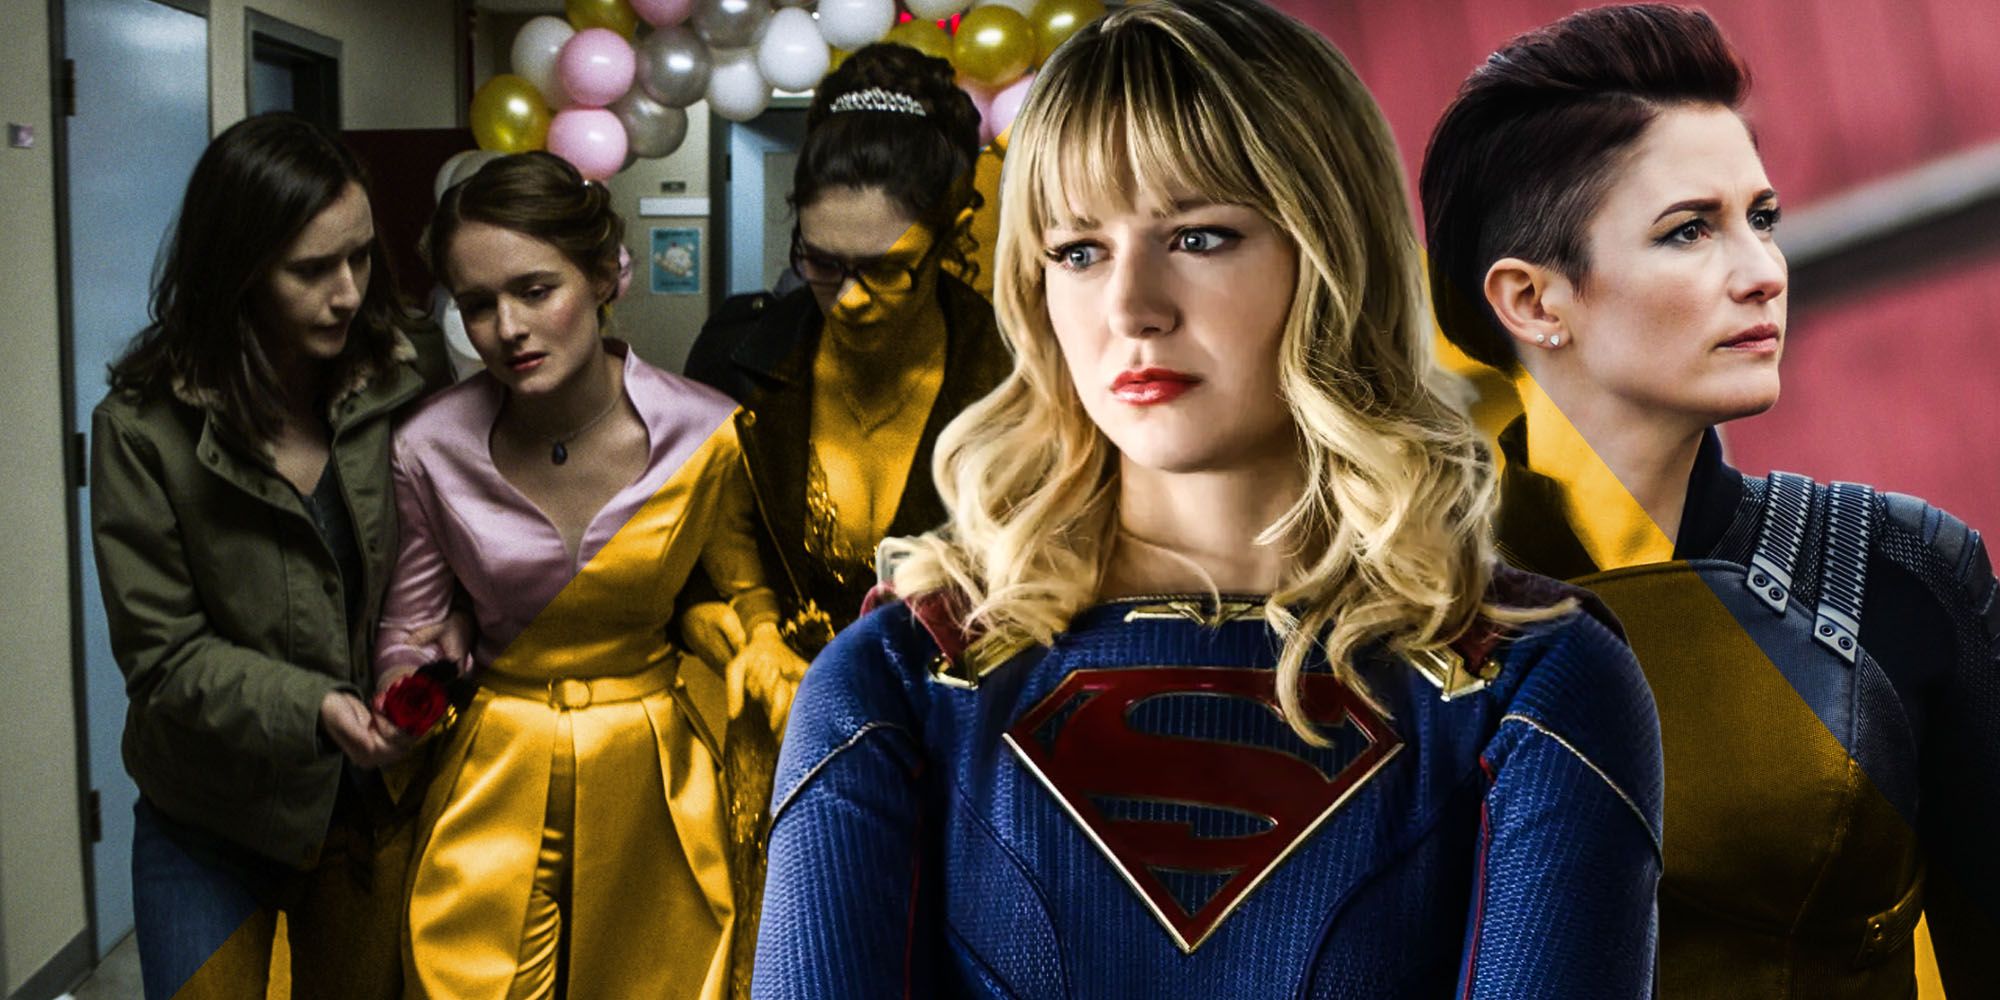 Alex Danvers Kara Danvers history Supergirl prom again